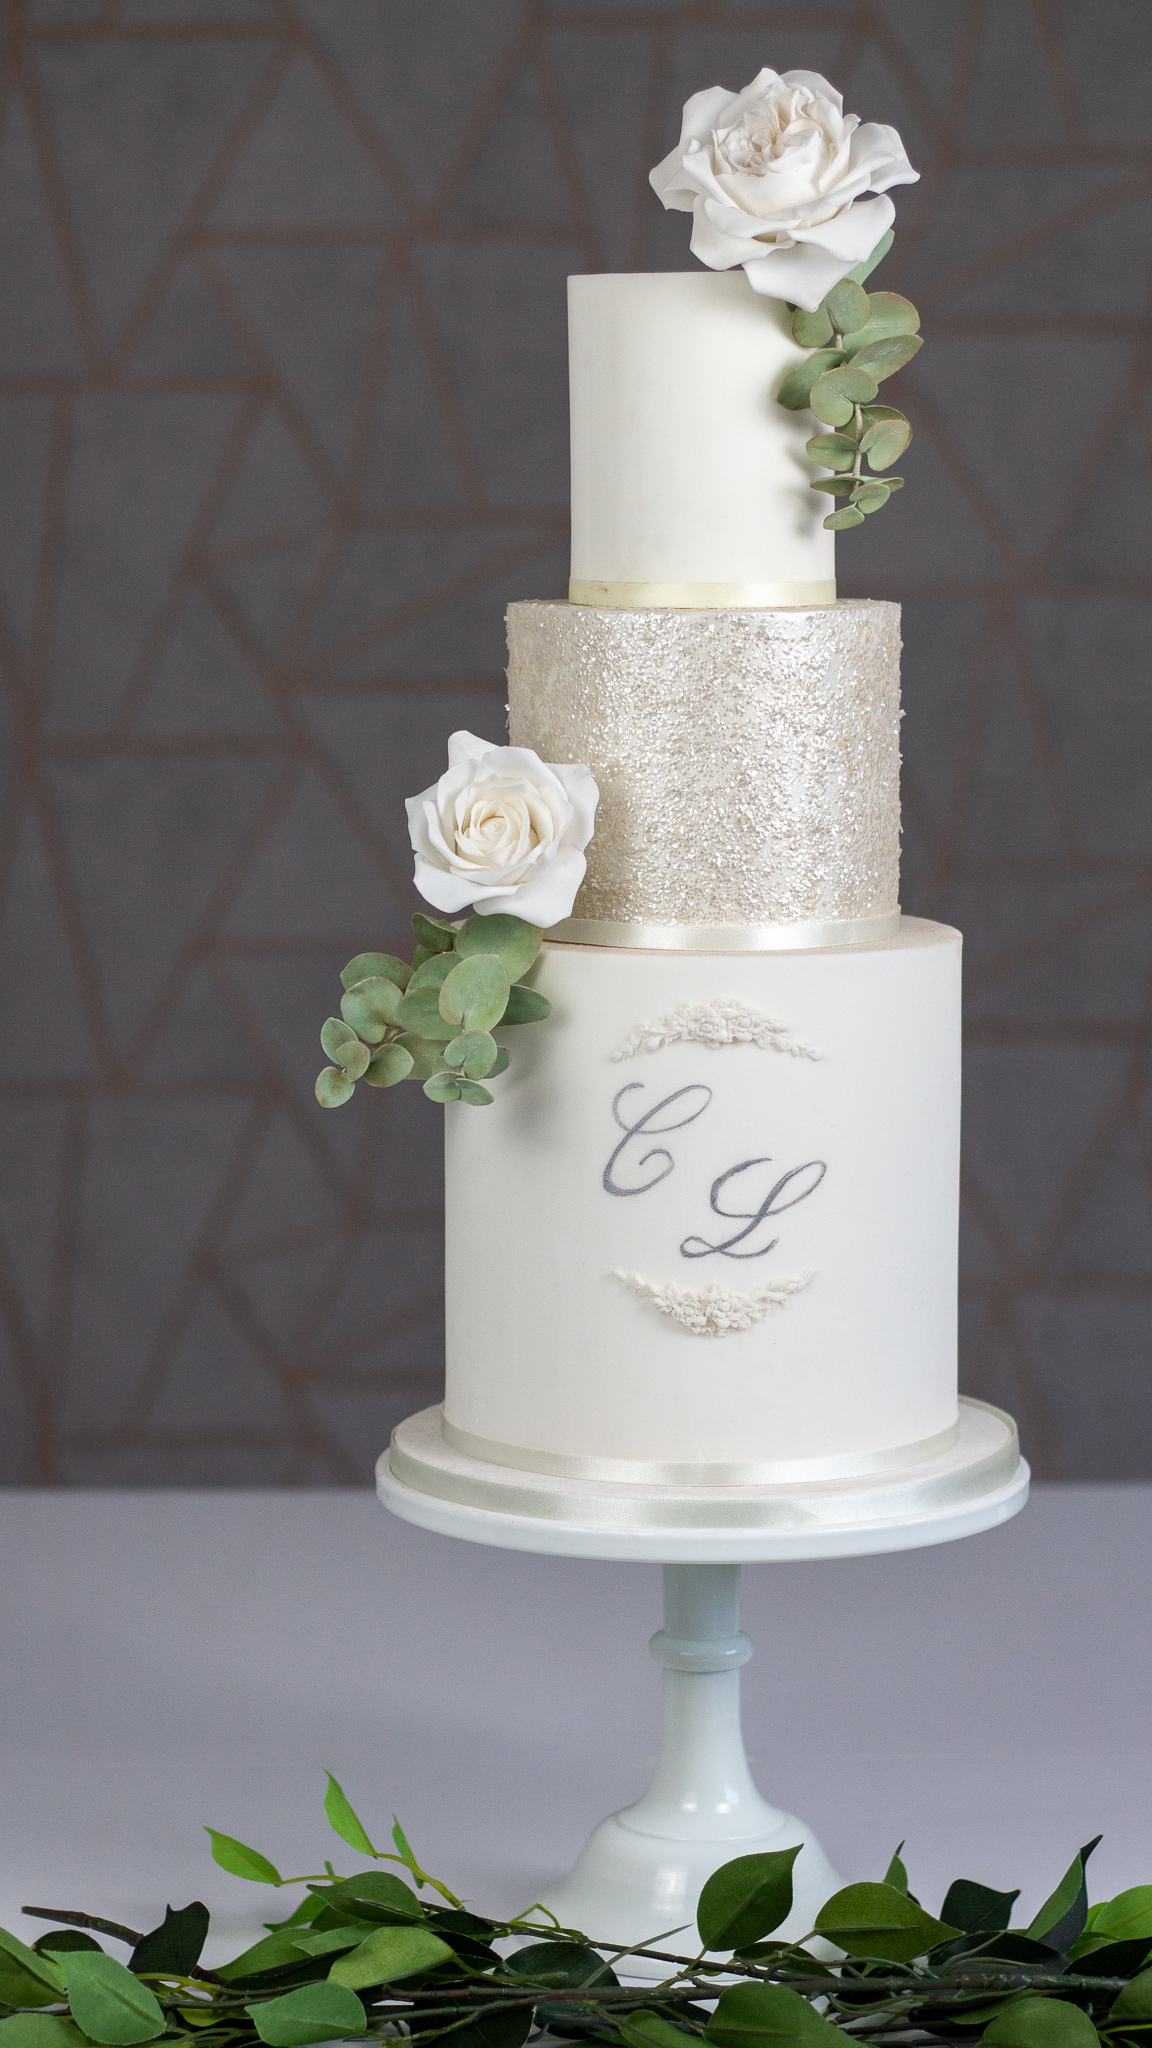 Stylish Classic White Wedding Cake with Sugar O'Hara Roses and Eucalyptus